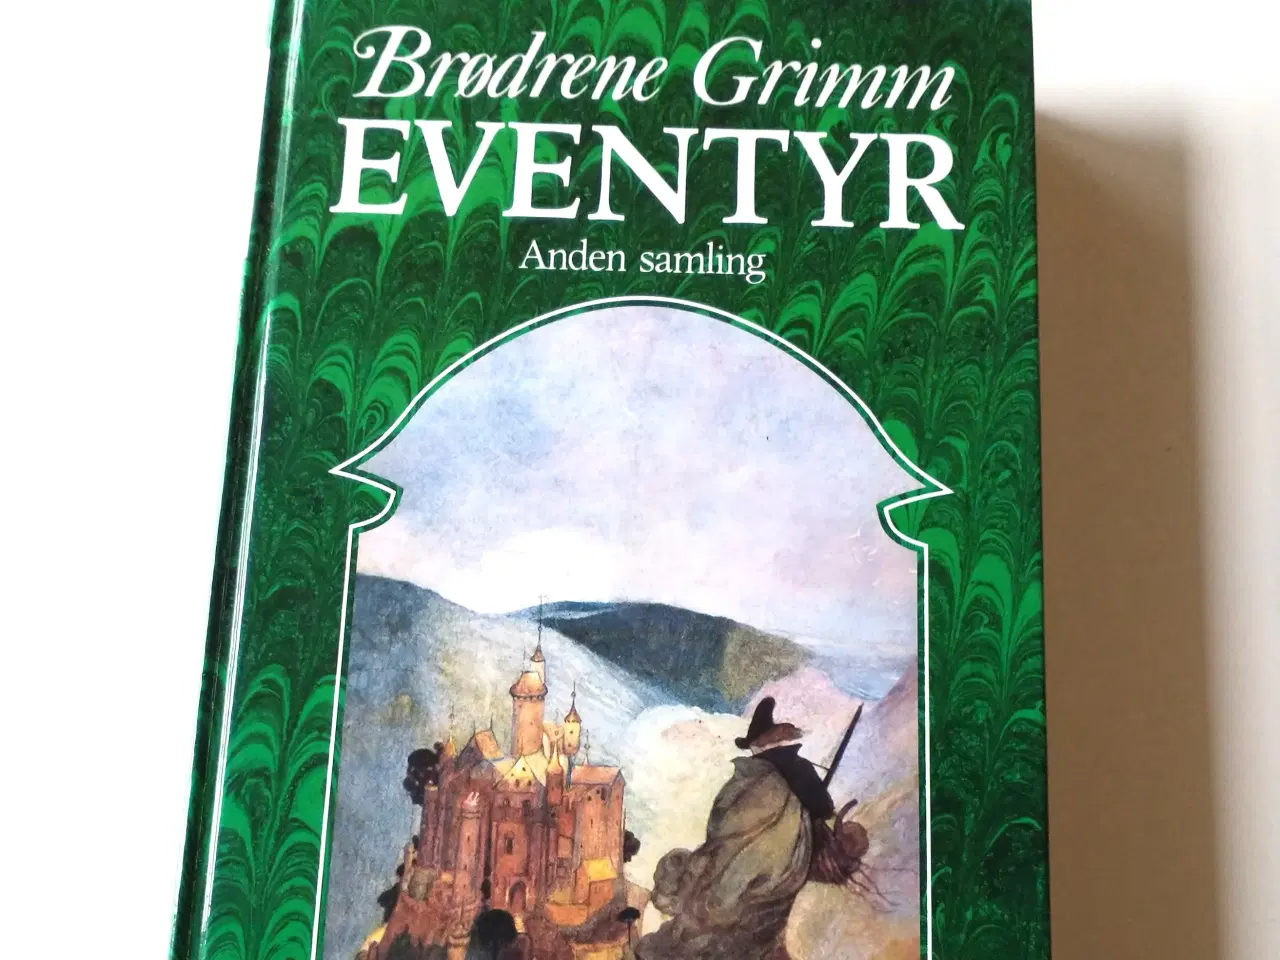 Billede 1 - Brødrene Grimm. Eventyr - anden samling.